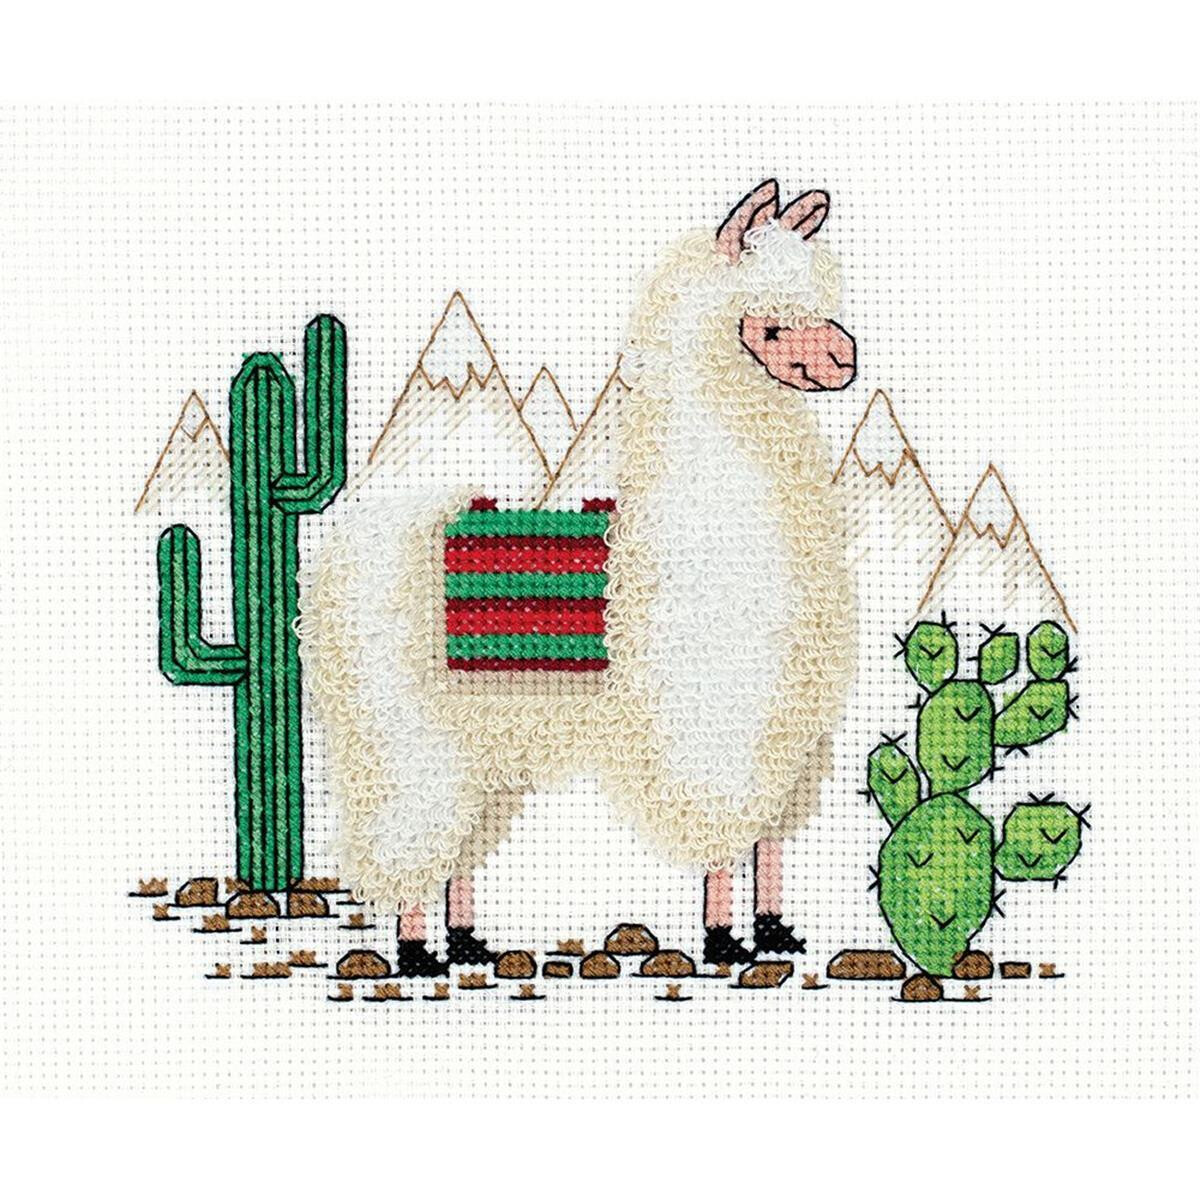 Klart counted cross stitch kit "Llama "...